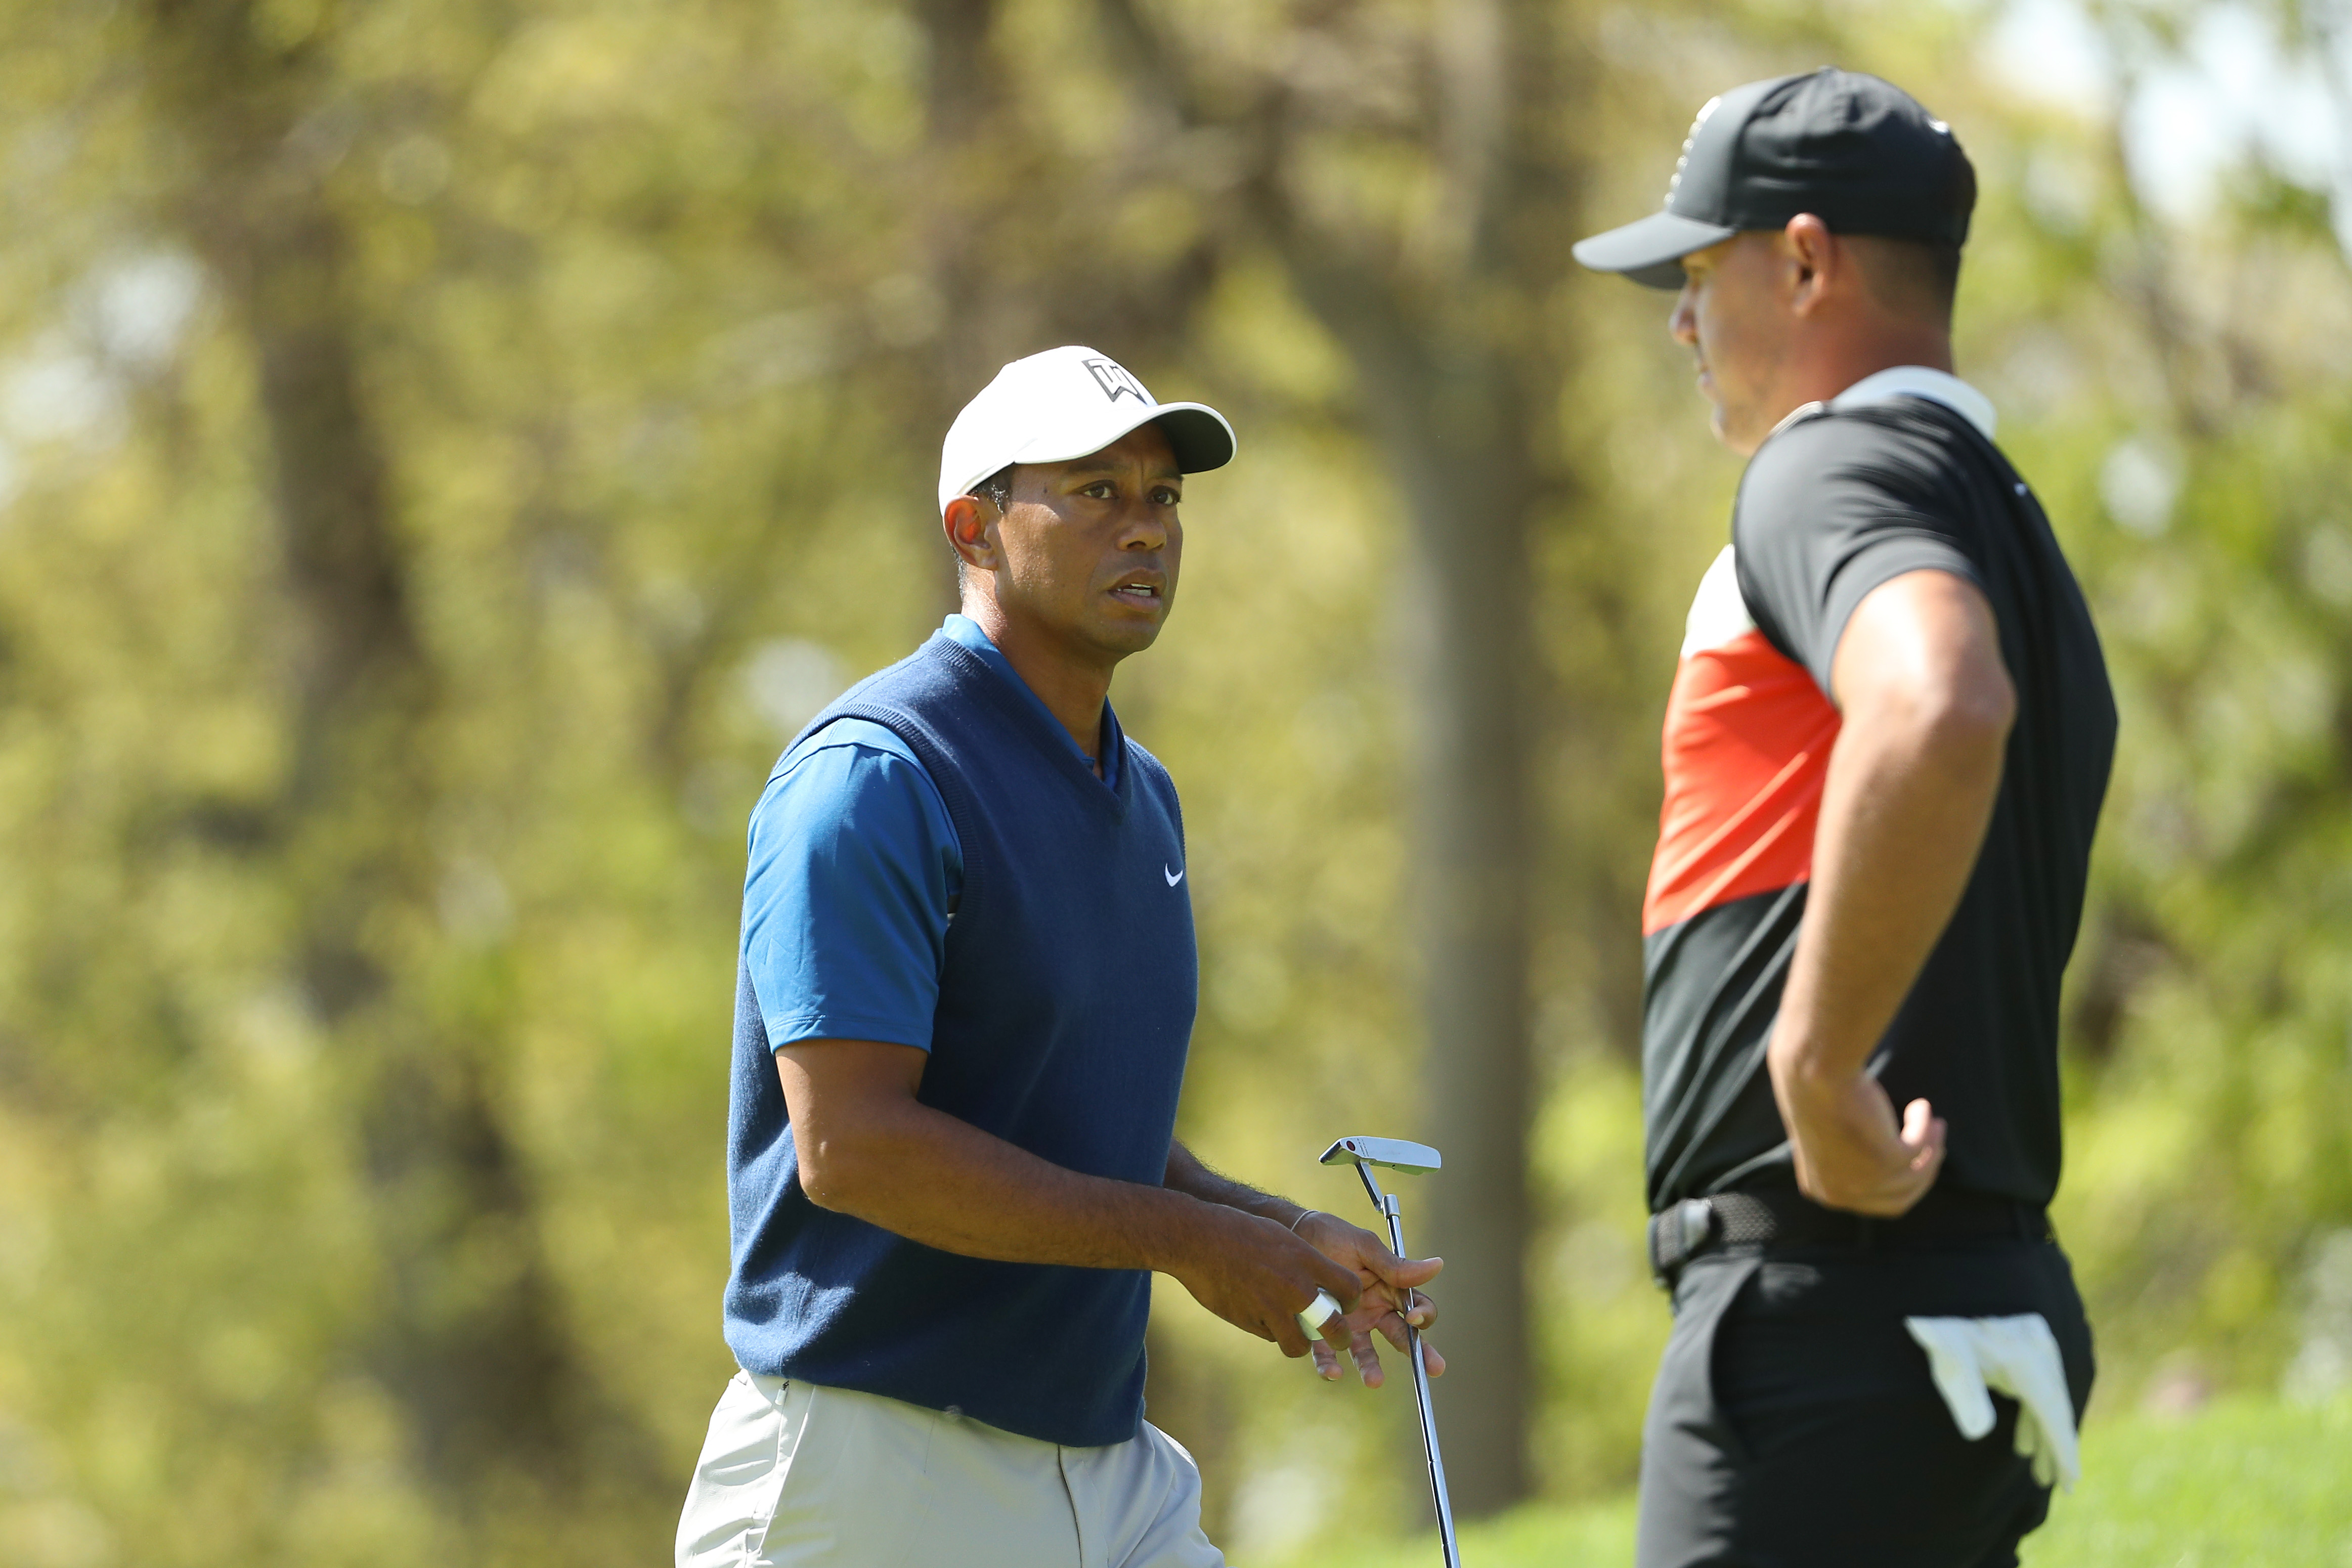 Tiger Woods nine shots behind leader Brooks Koepka after first round of PGA Championship